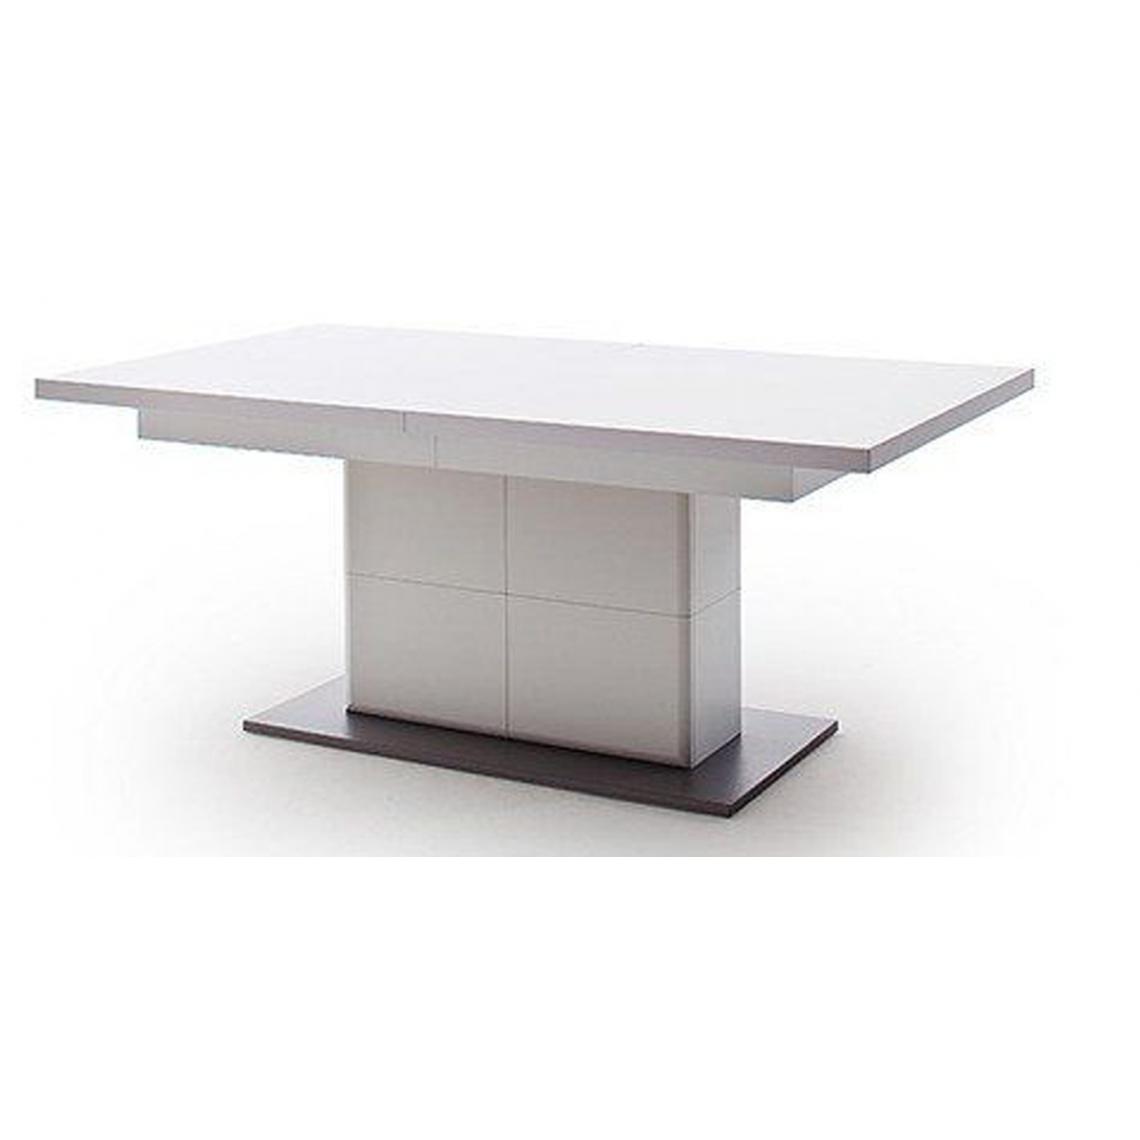 Pegane - Table à manger extensible en bois coloris blanc mat - L.180-280 x H.77 x P.100 cm - Tables à manger